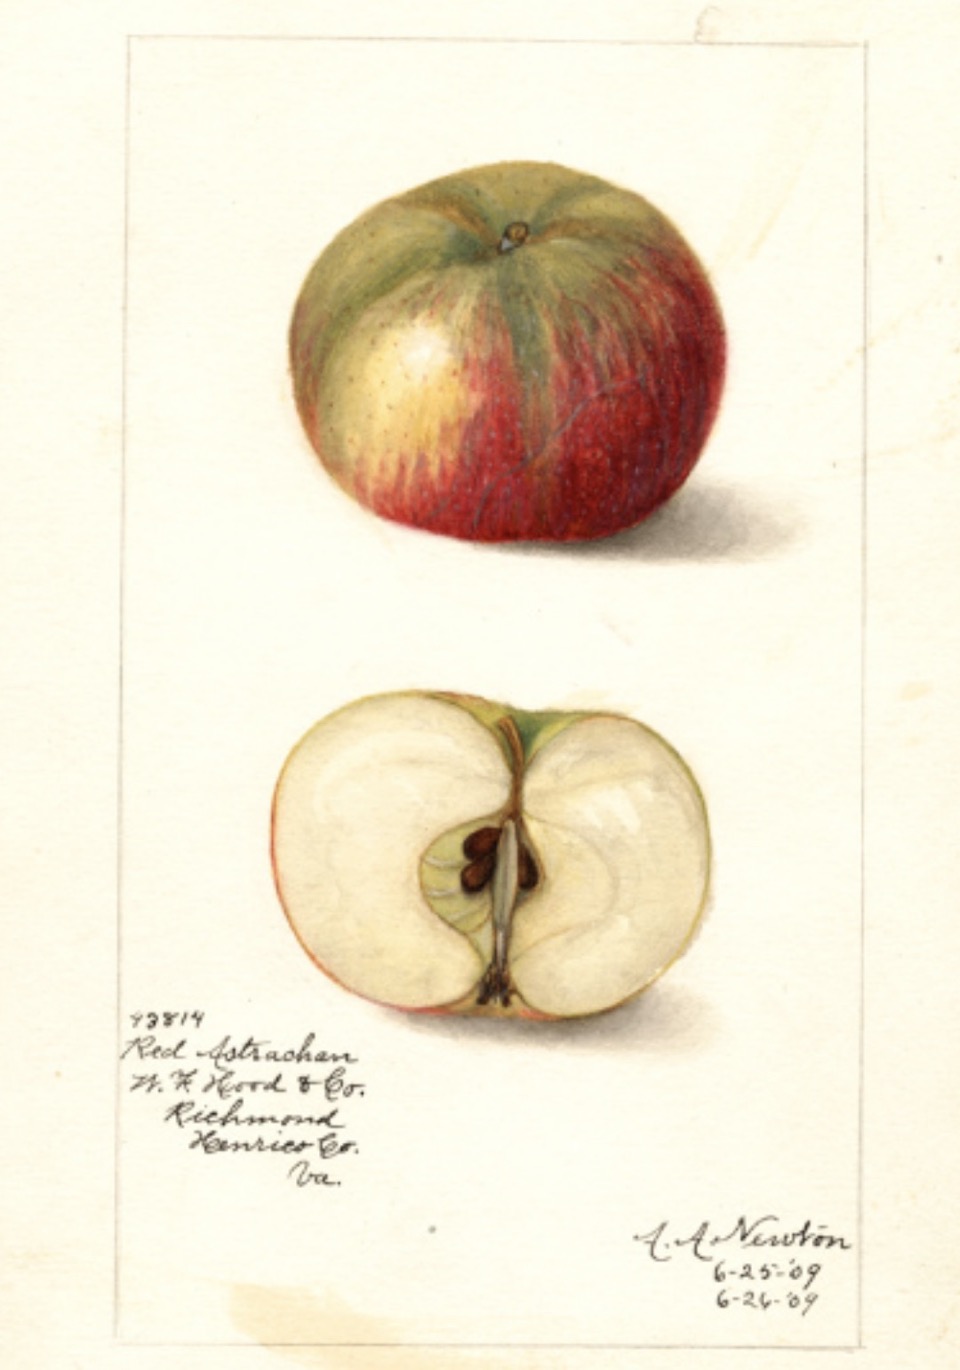 Historische Abbildung eines grünlich-roten und eines aufgeschnittenen Apfels; USDA